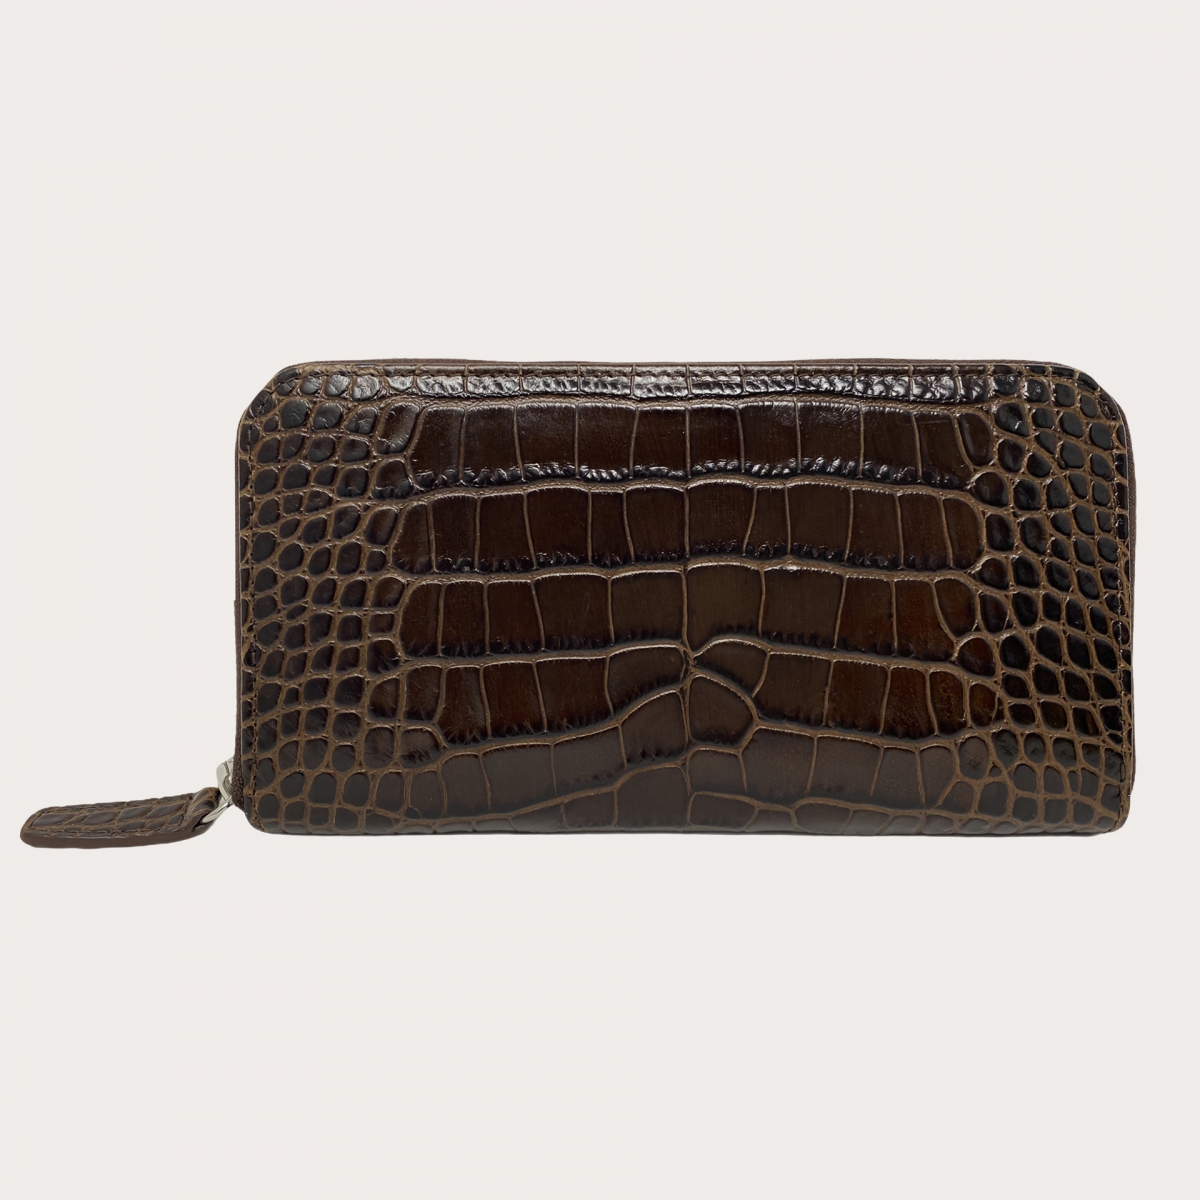 BRUCLE Elegante billetera de mujer con cremallera en piel con estampado de cocodrilo, marrón oscuro